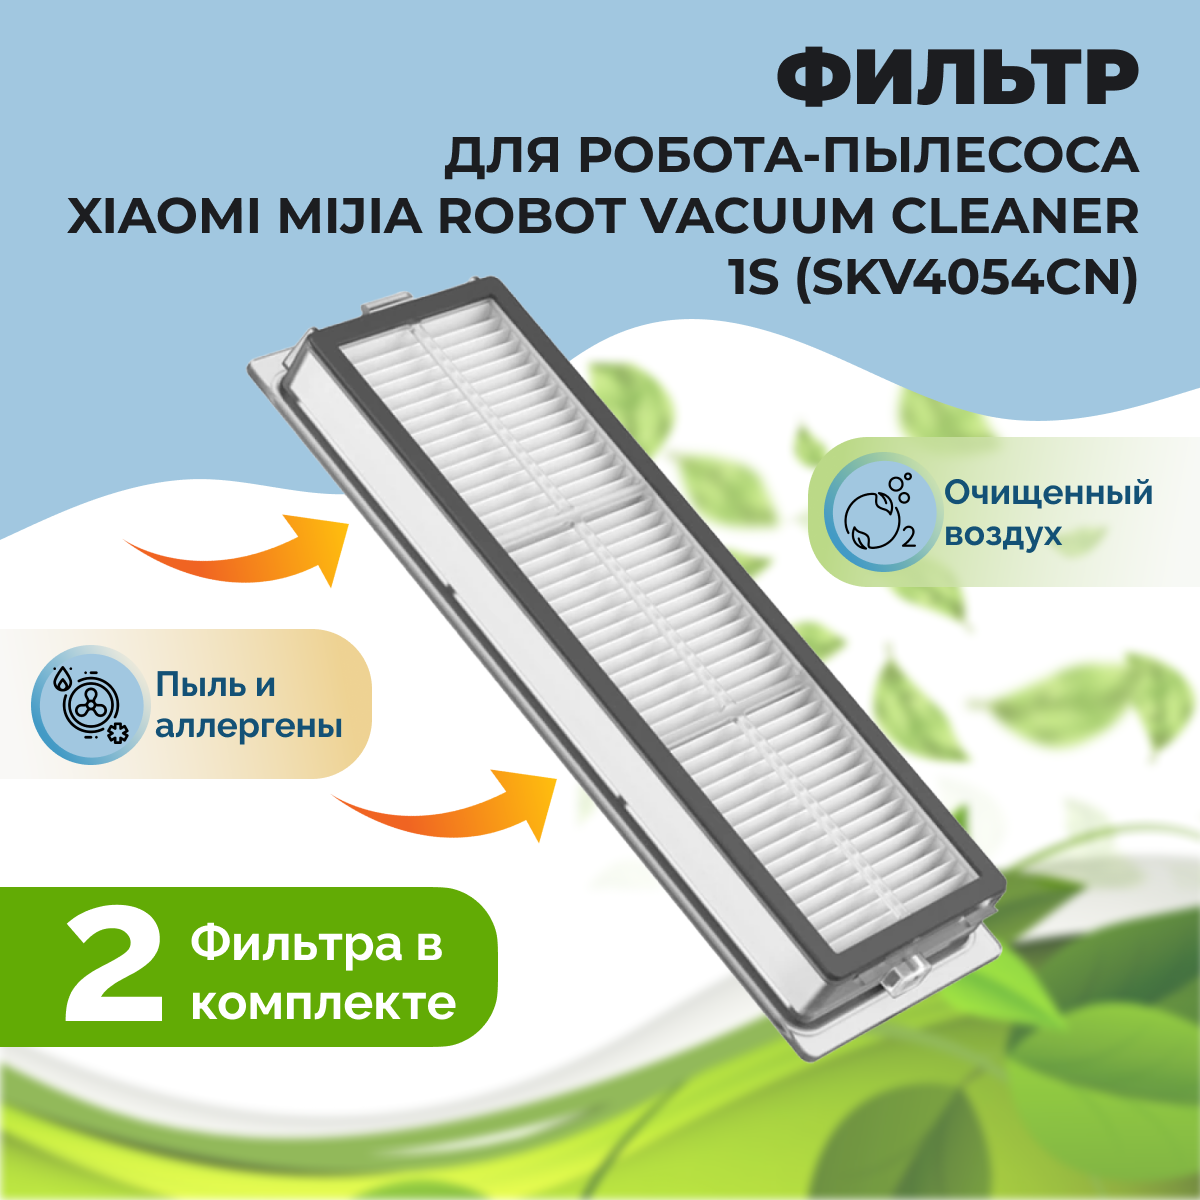 Фильтры для робота-пылесоса Xiaomi Mijia Robot Vacuum Cleaner 1S (SKV4054CN), 2 штуки 558503, фото 1